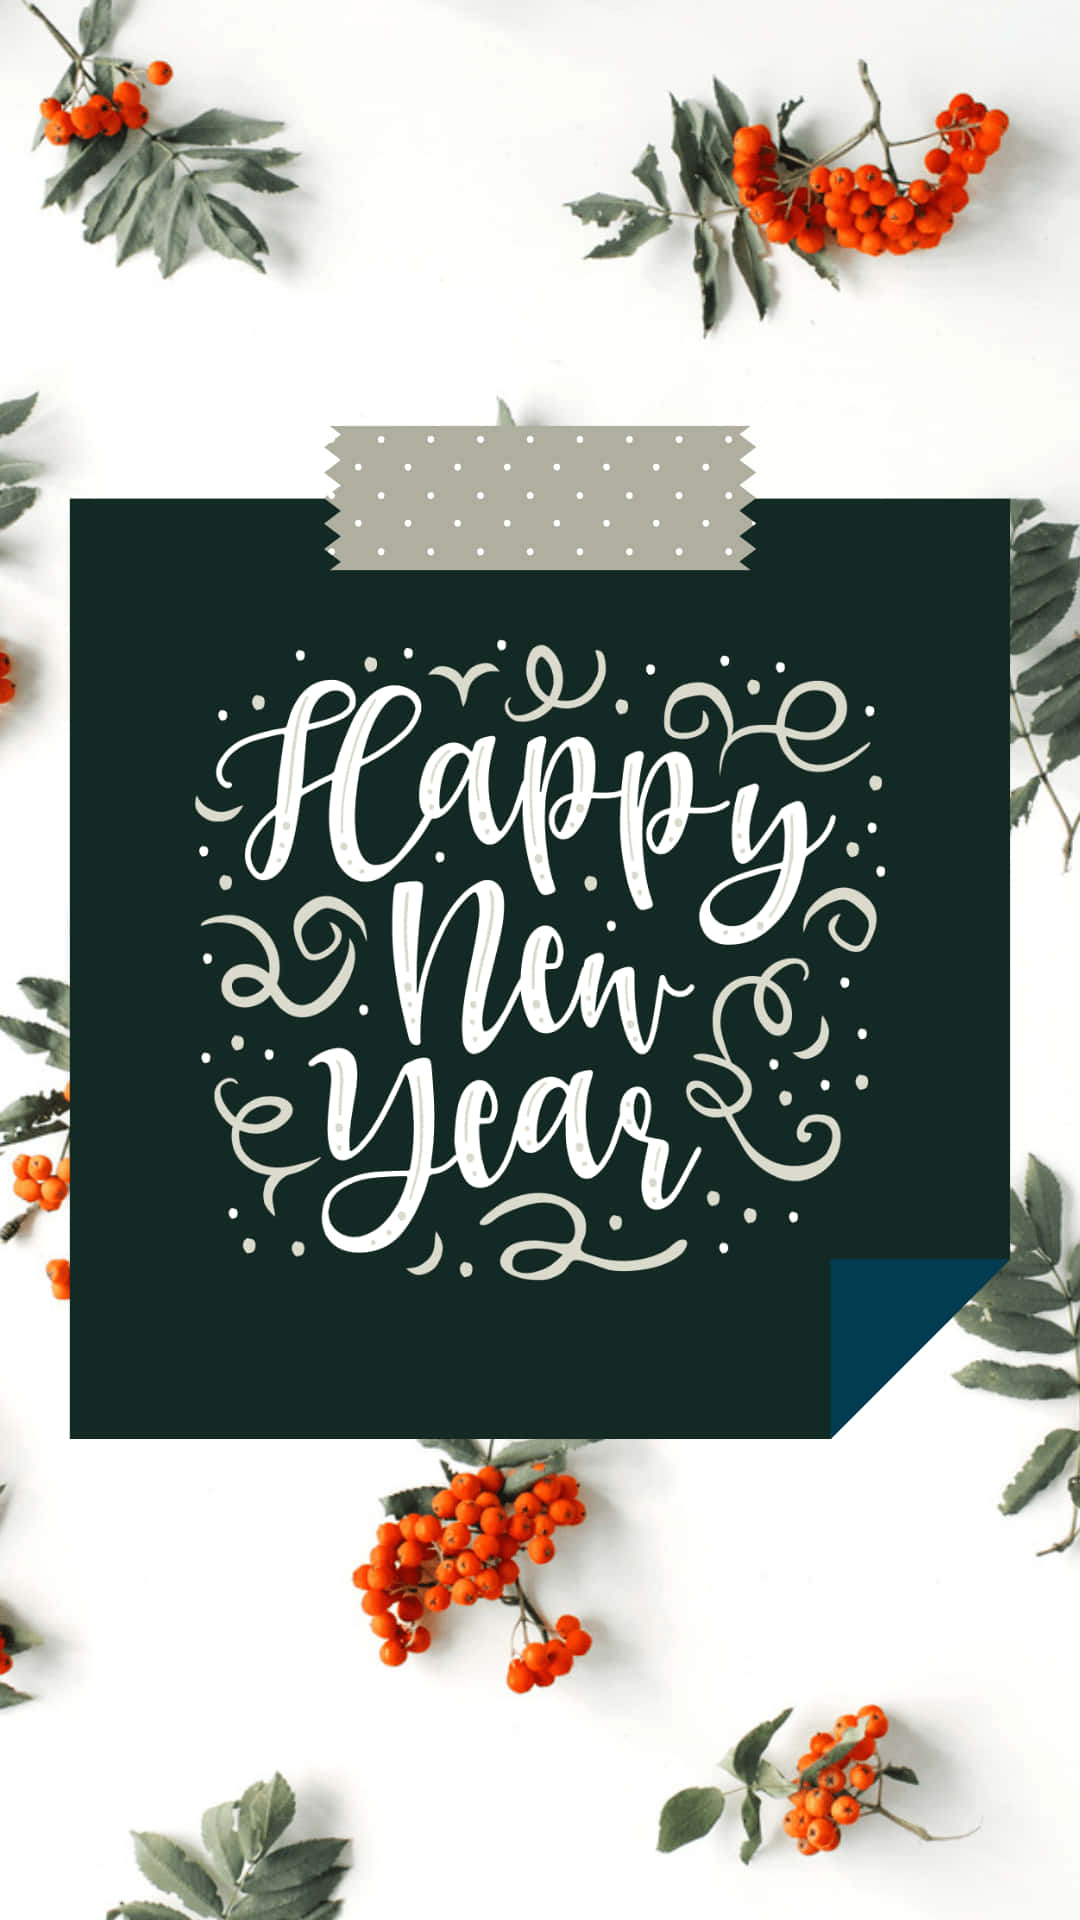 Cartãode Felicitações De Ano Novo Com Bagas E Folhas. Papel de Parede